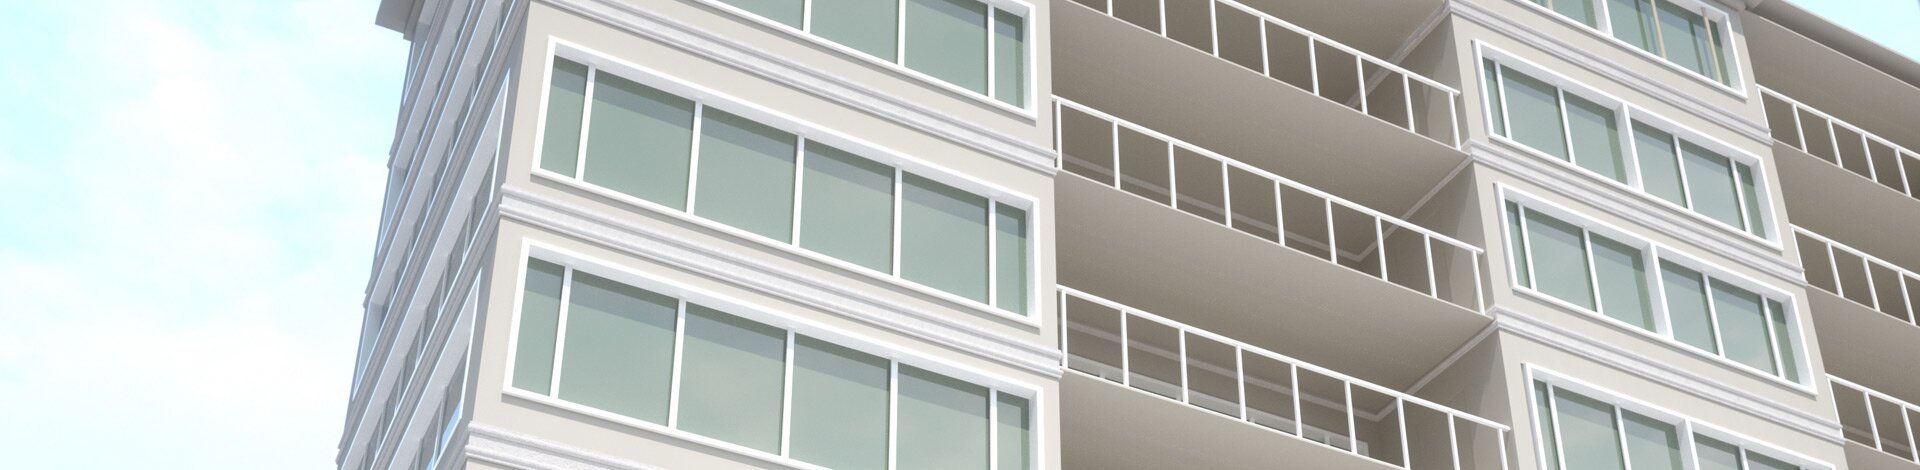 Moldura em EPS é solução contemporânea para fachadas e interiores